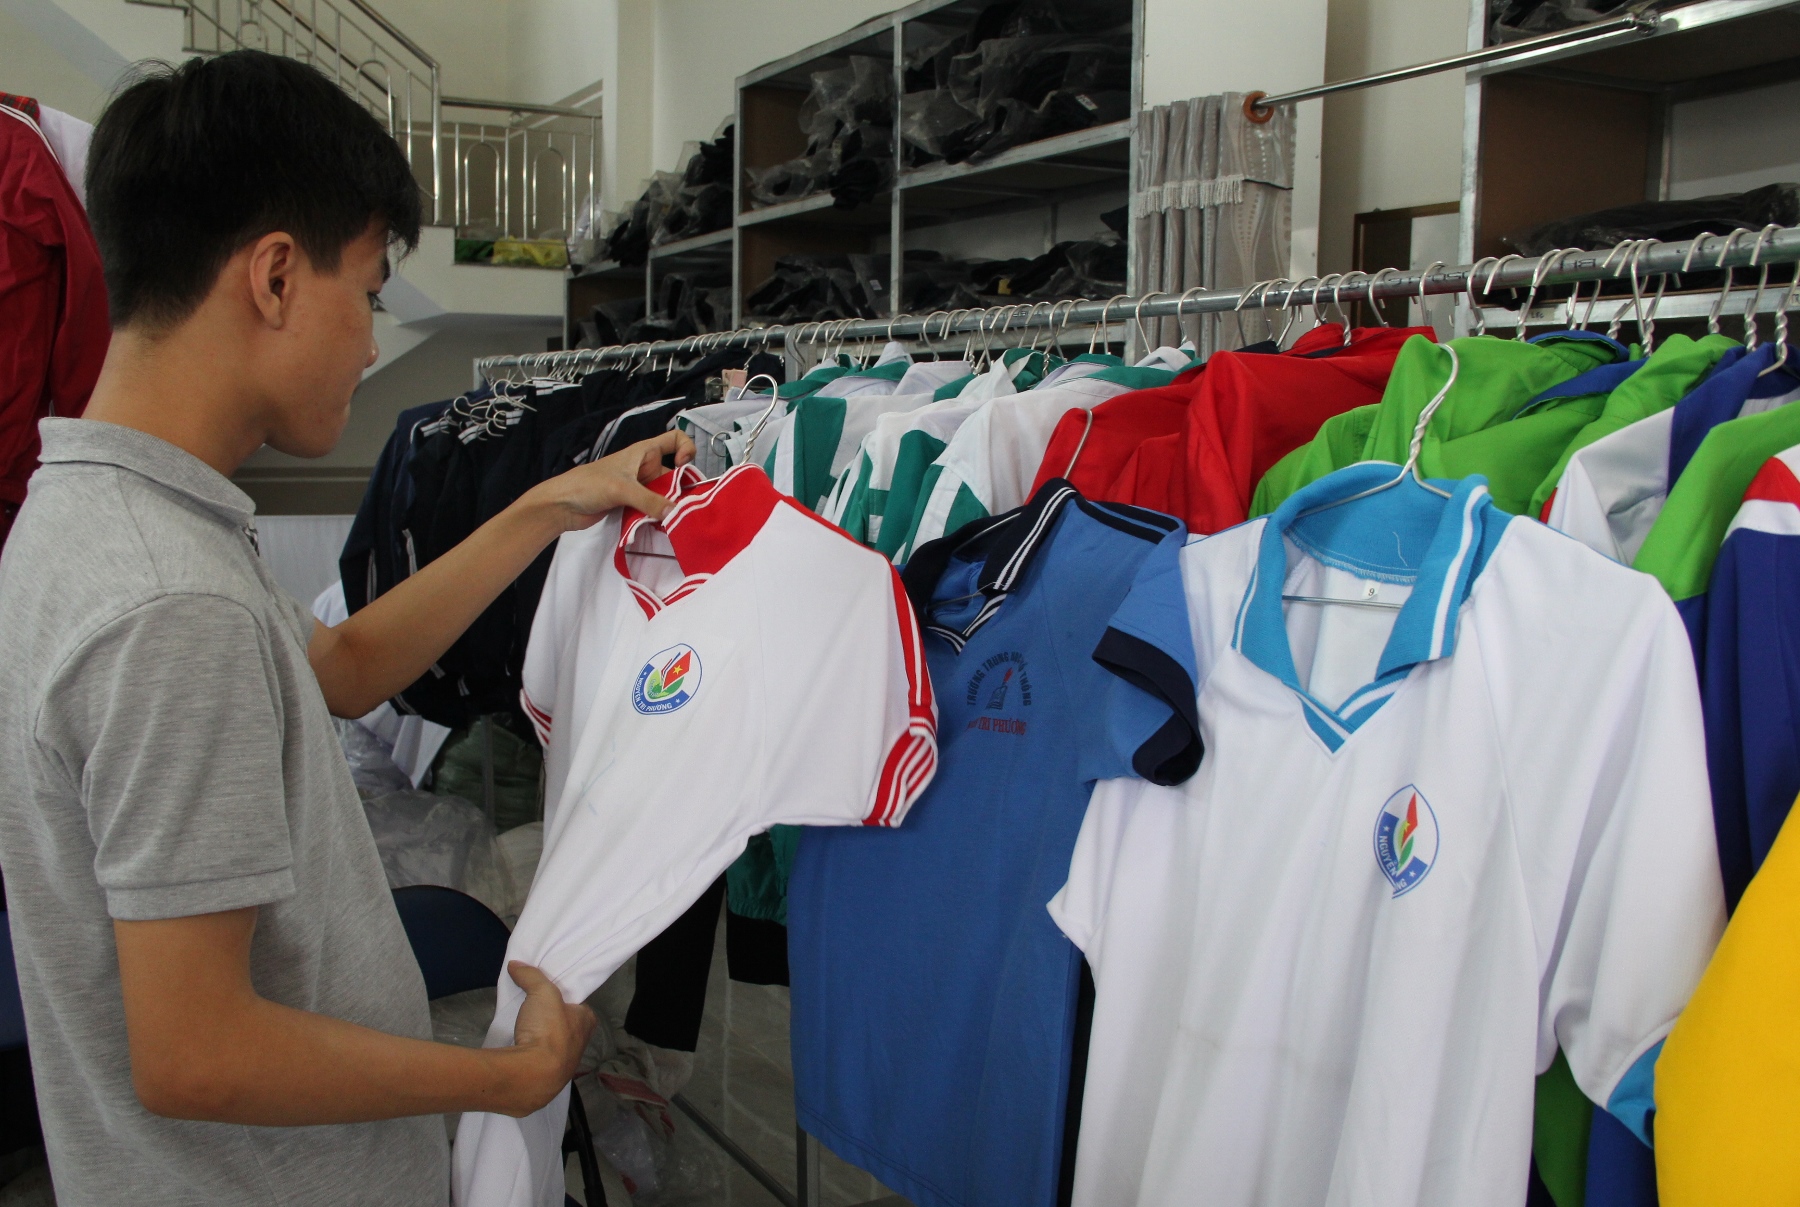 Trường THPT Nguyễn Tri Phương (phường Lộc Tiến) có đến 3 mẫu đồng phục thể dục